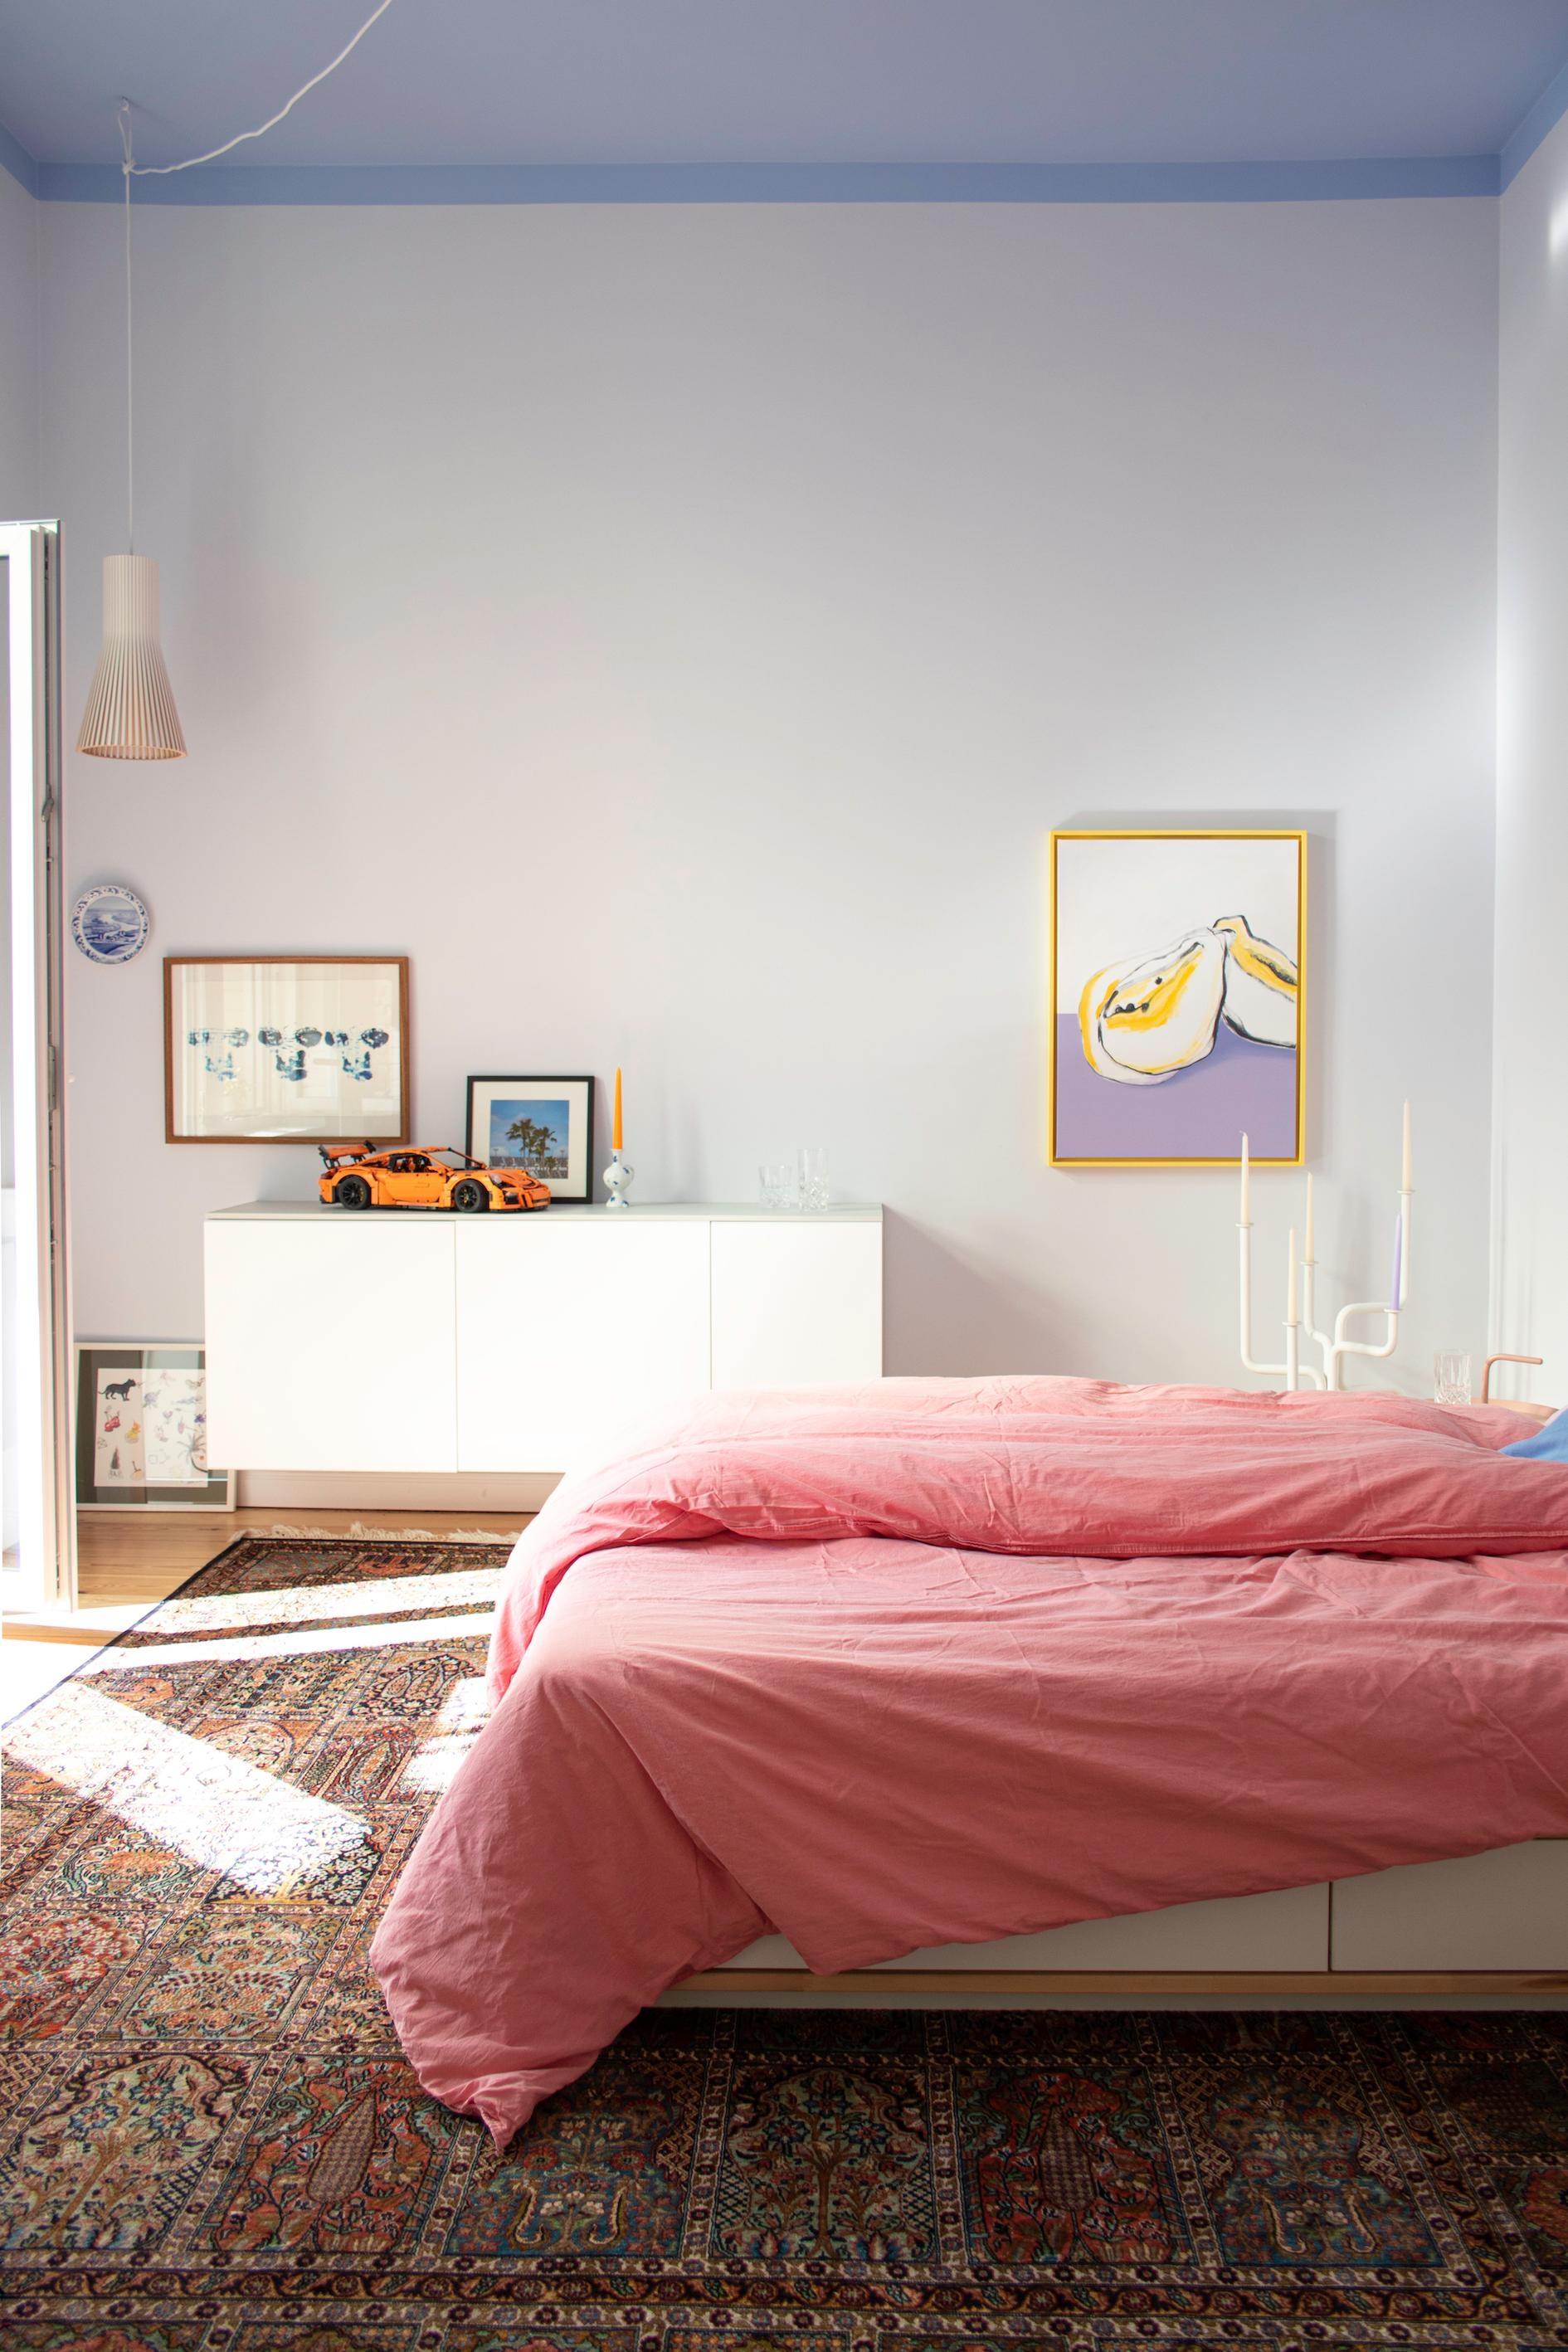 #Schlafzimmer #Bett #Wandfarbe #Blau #Deckenfarbe #Pastell #Bettwäsche #Couchliebt #Couchstyle #Farbenfroh